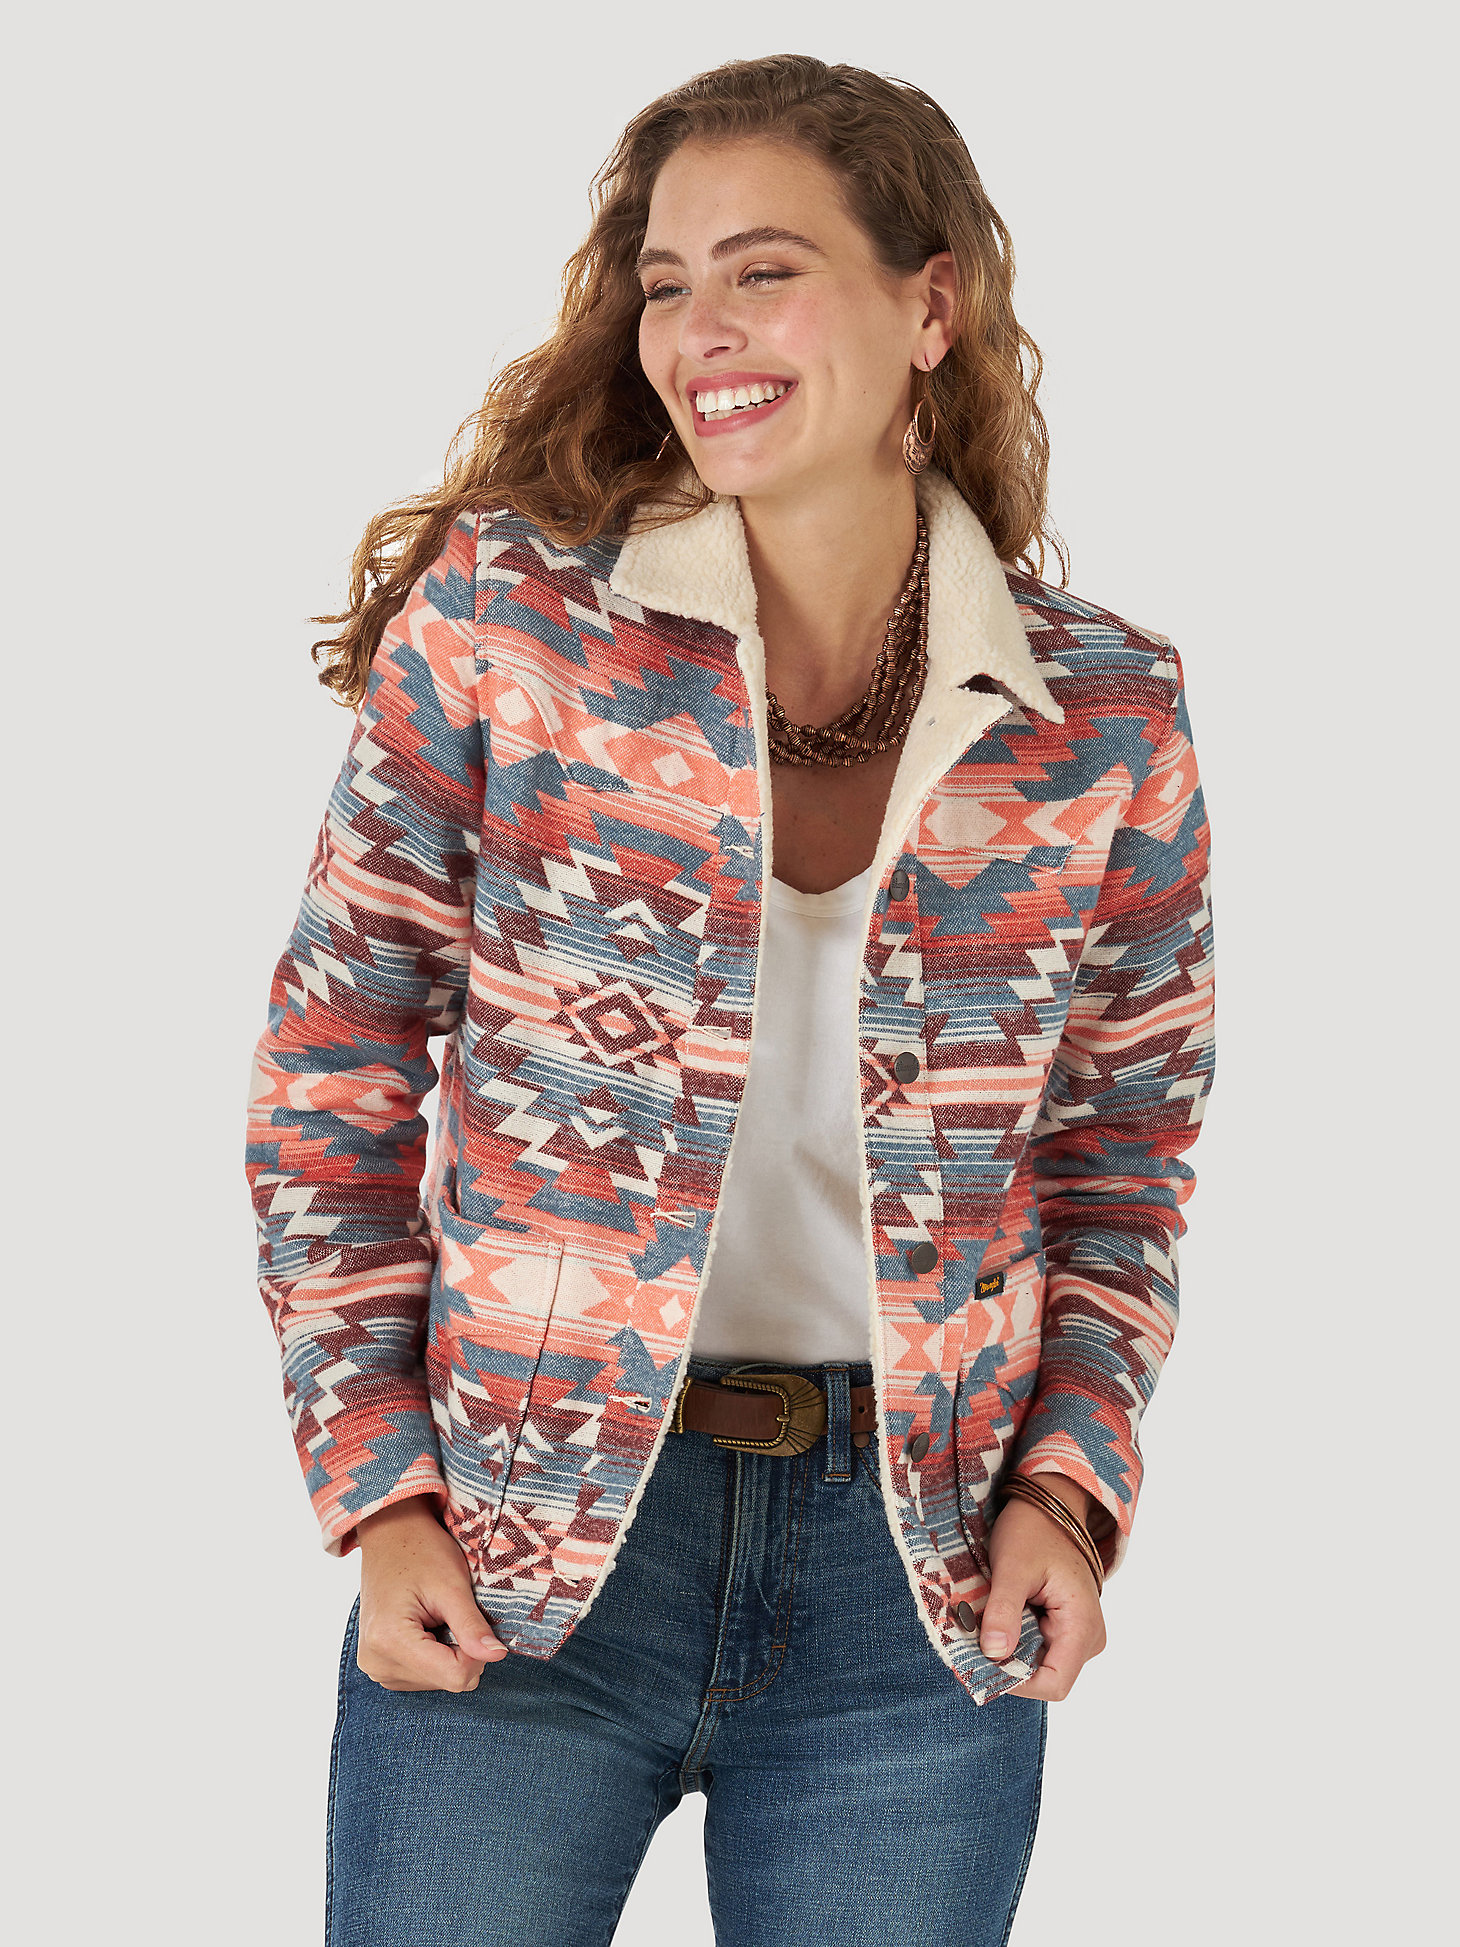 Women's Wrangler® Sherpa Lined Southwestern Print Jacket in multi main view